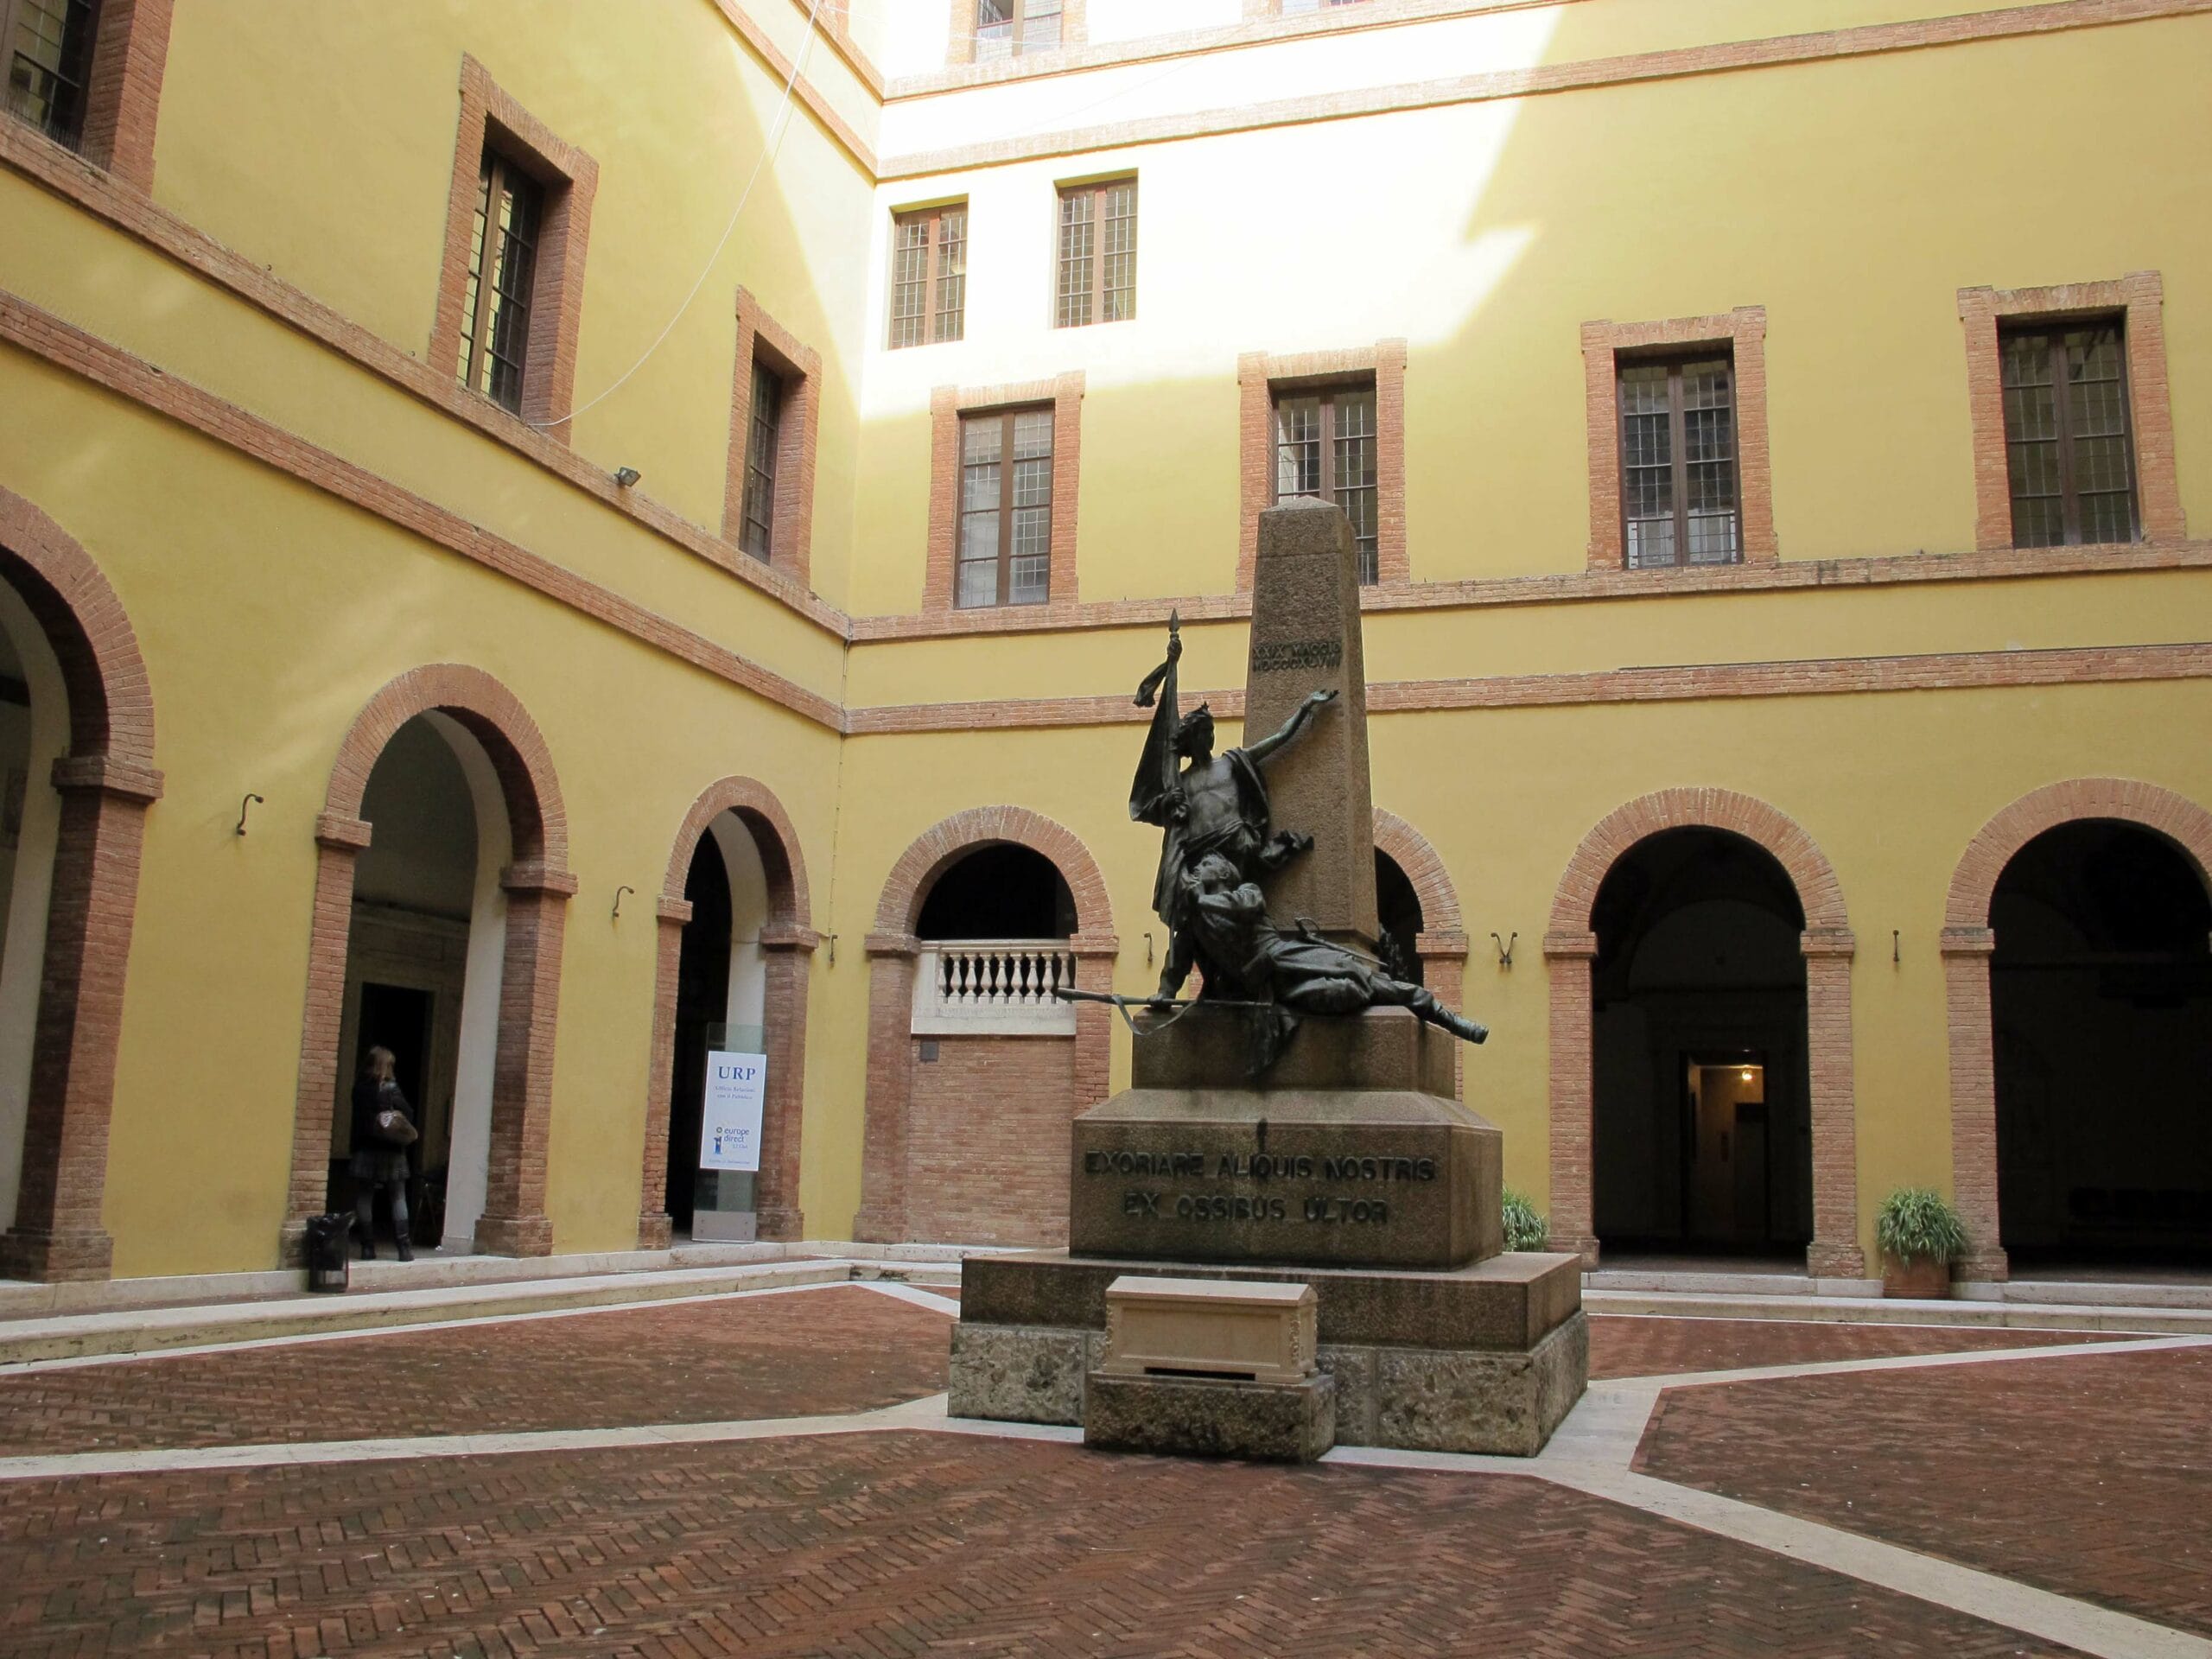 Università di Siena: trovate in un ufficio scritte fasciste e omofobe